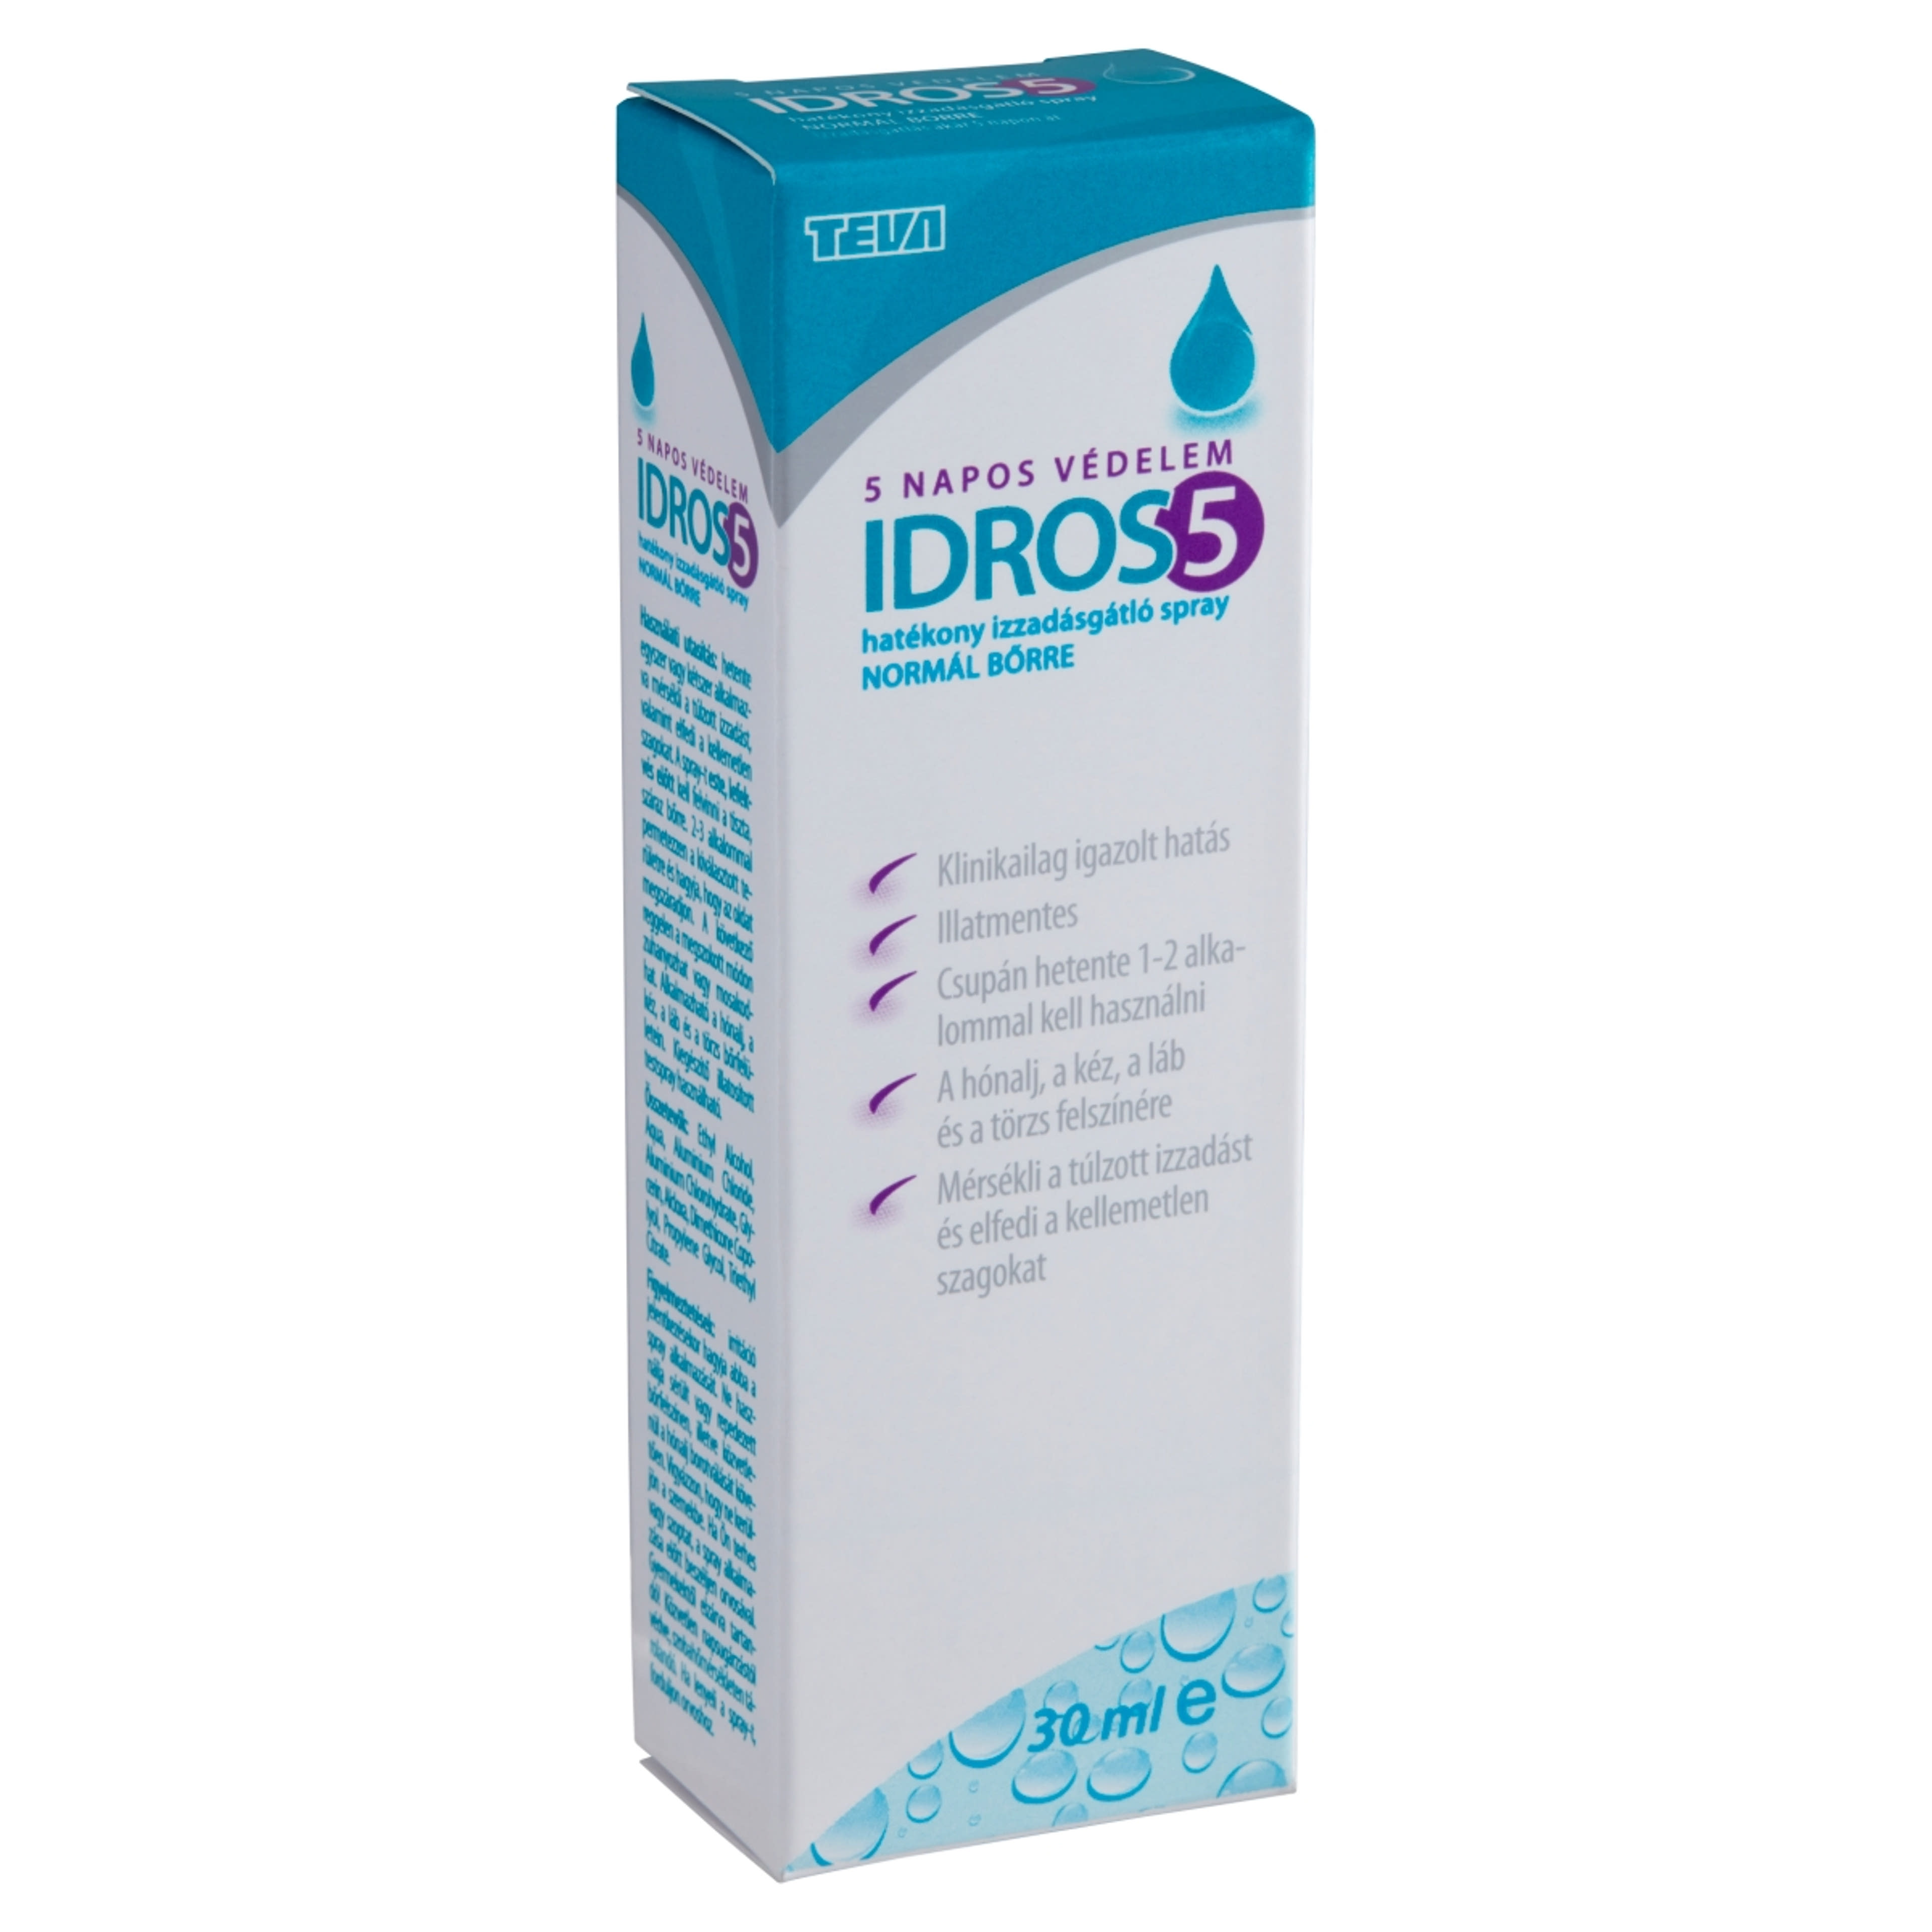 Idros5 izzadságátló spray - 30 ml-2